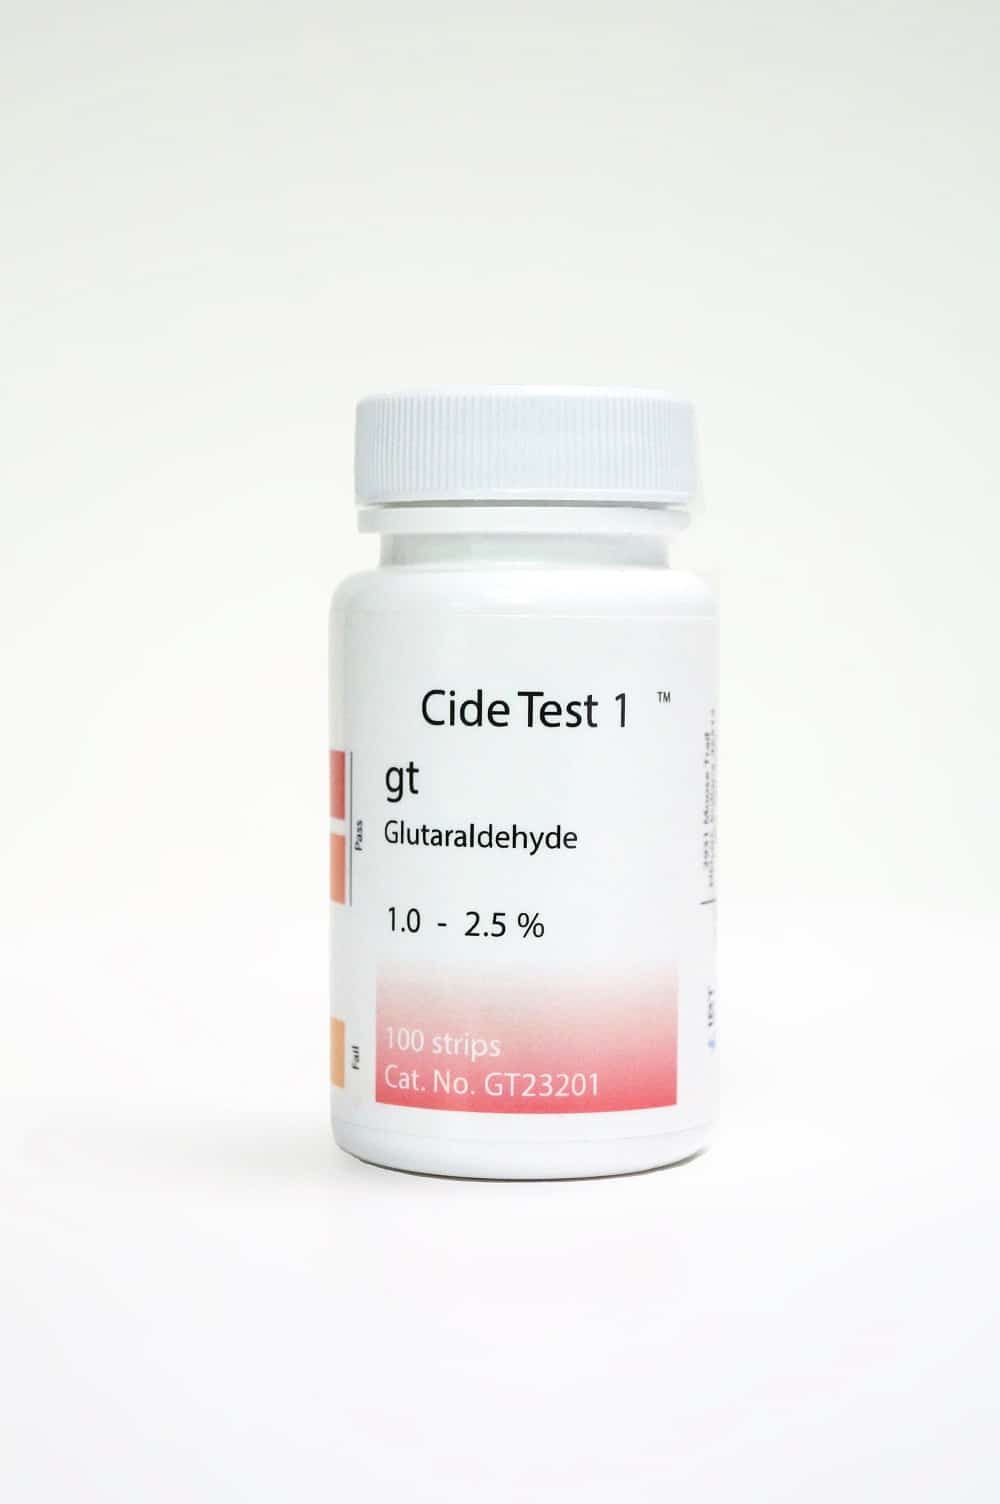 Cide Test Glutaraldehyde Potency Test Strips 100ct